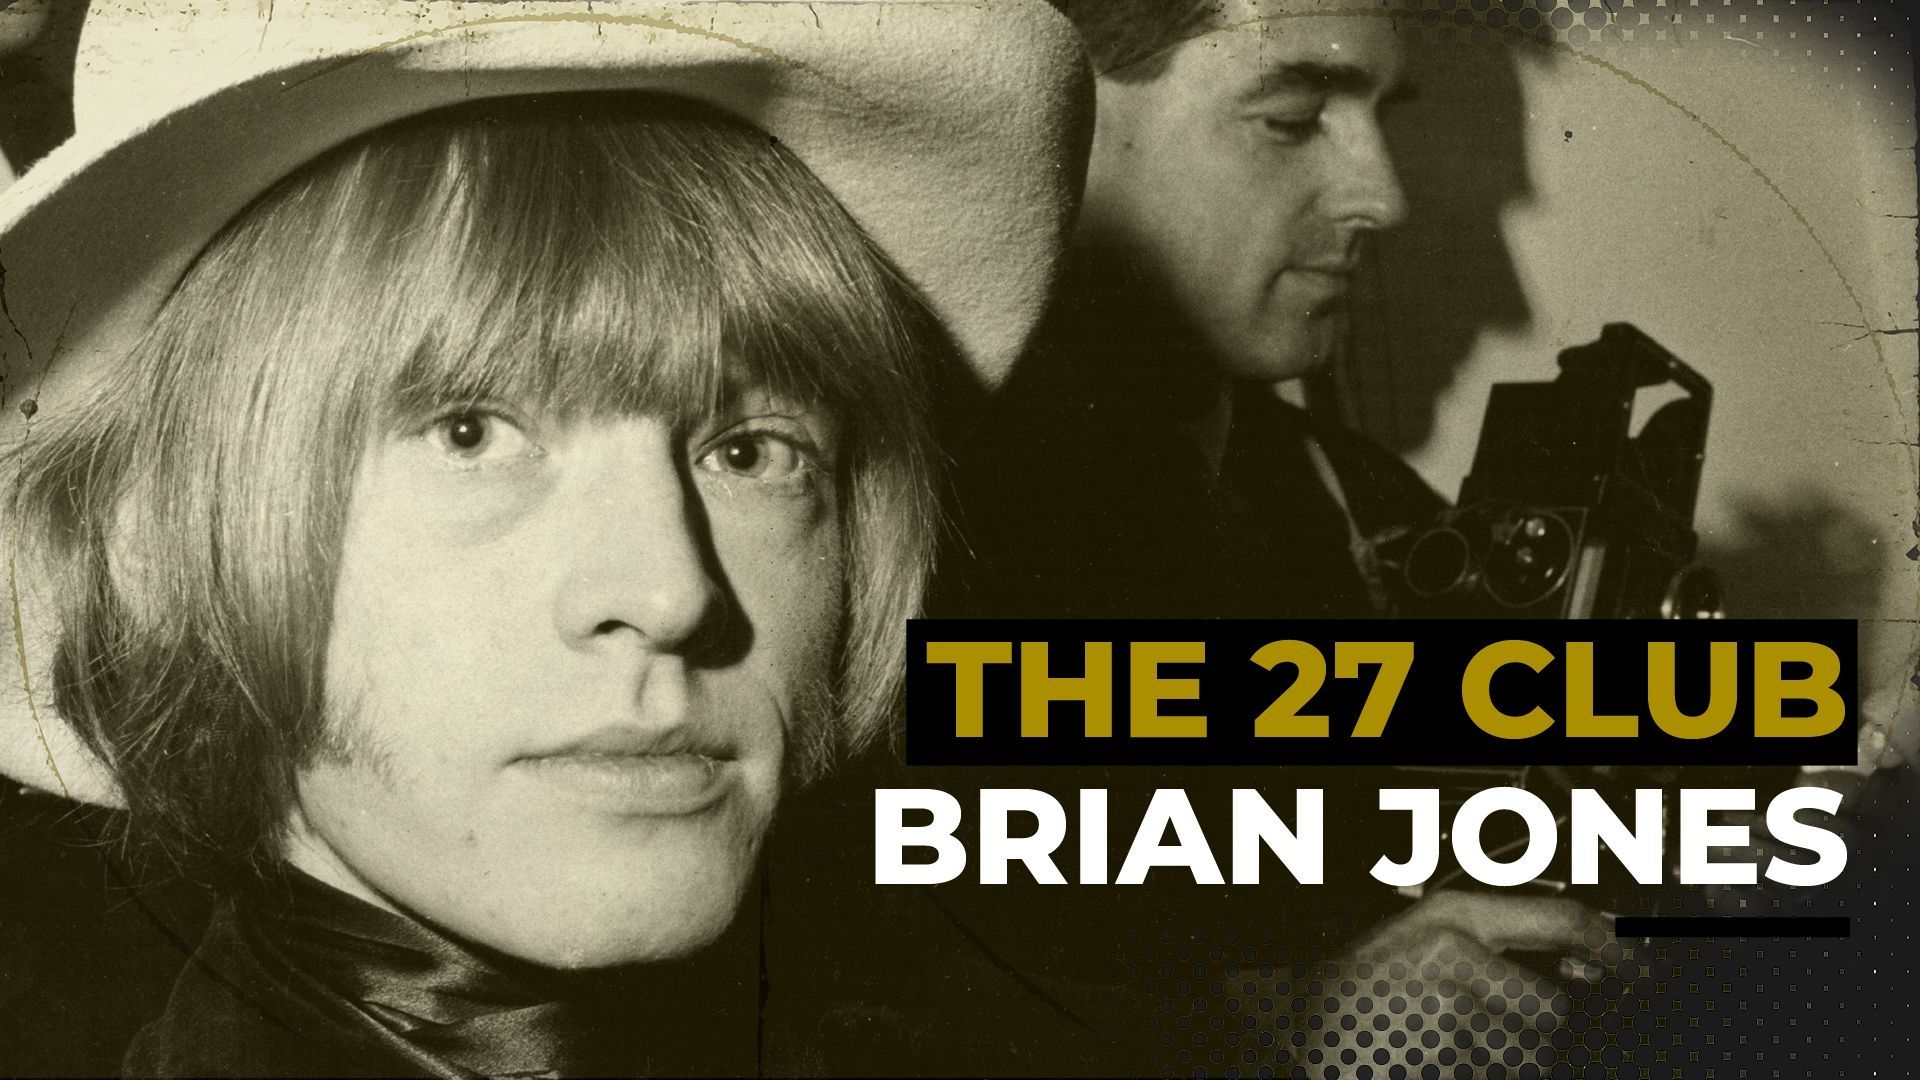 THE 27 CLUB : Brian Jones, fondateur des Rolling Stones s’éteint en juillet 1969 et fait naître la légende du Club des 27